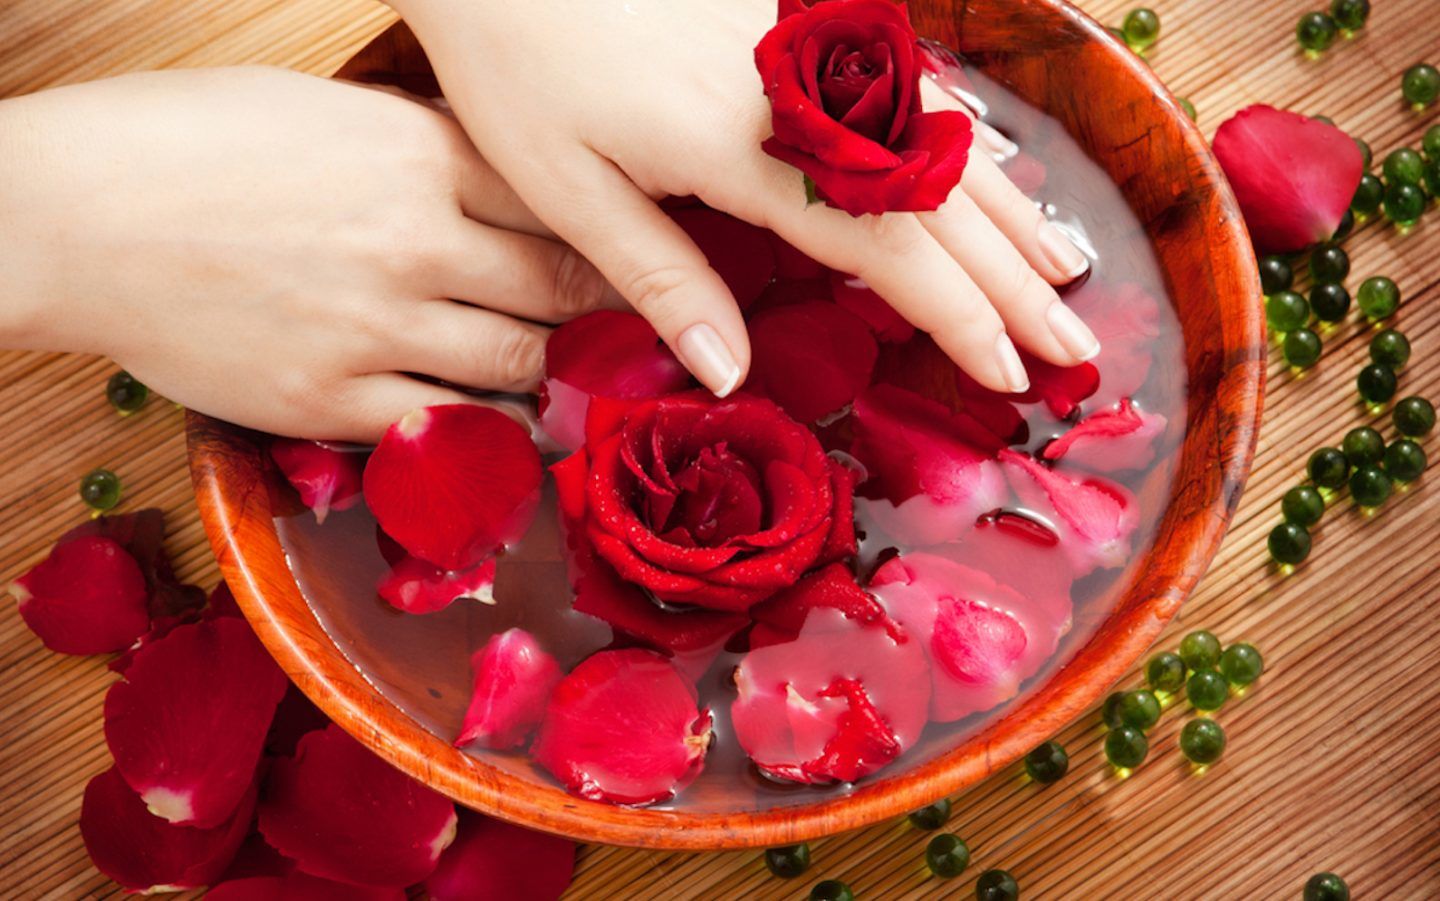 विवाहित स्त्रीसाठी स्वप्नात लाल गुलाबांचा अर्थ काय आहे?